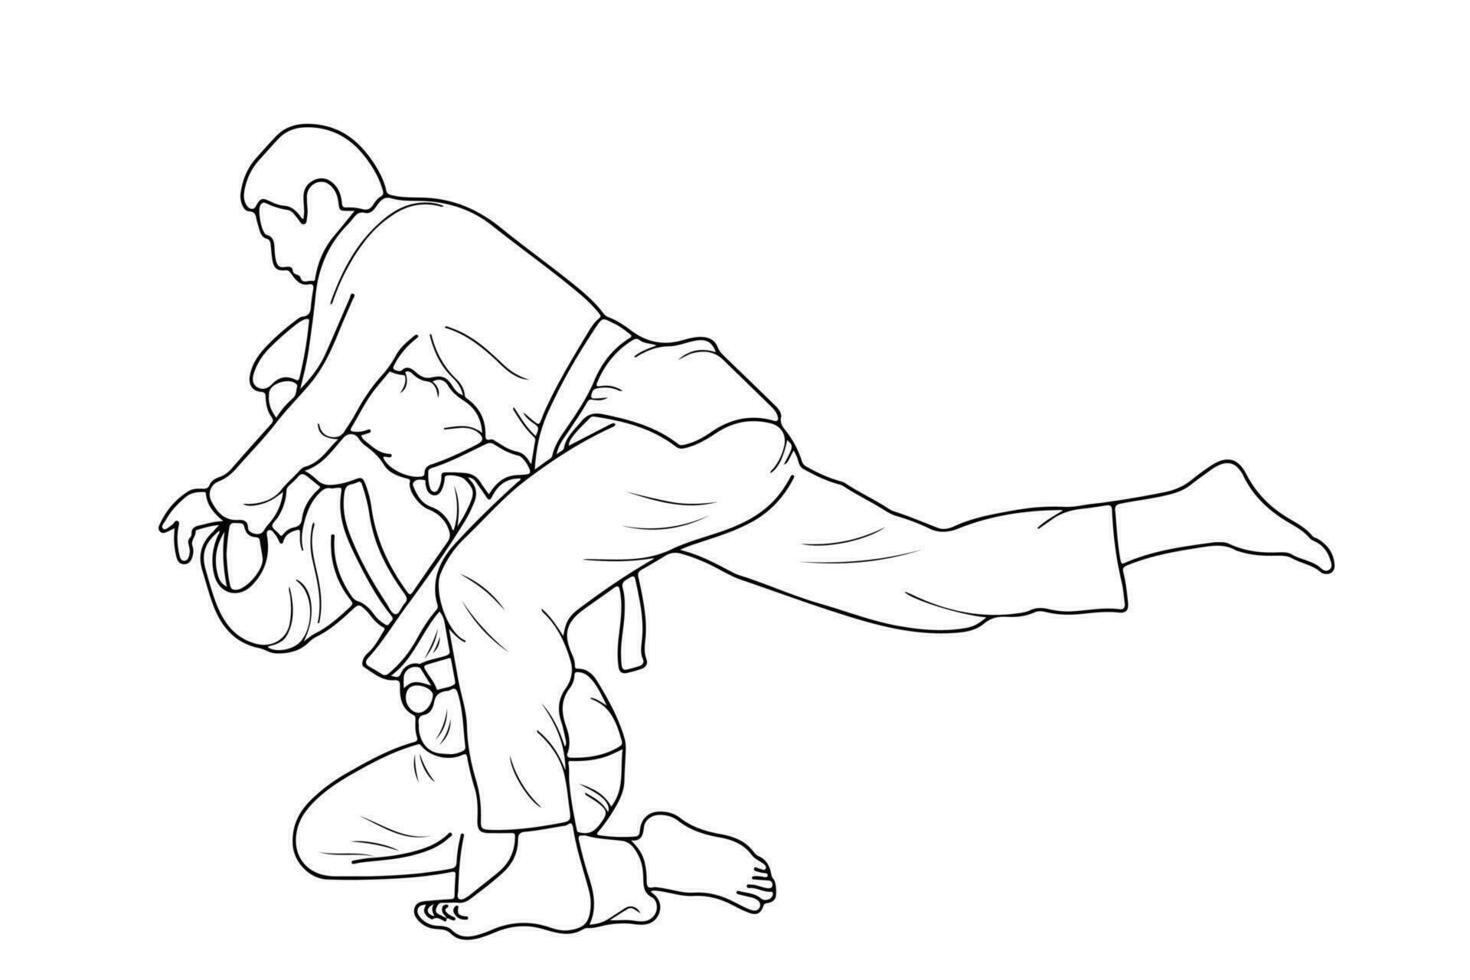 linje teckning av två ung sportigt judoka kämpe. judoist, judoka, idrottare, duell, bekämpa, judo vektor